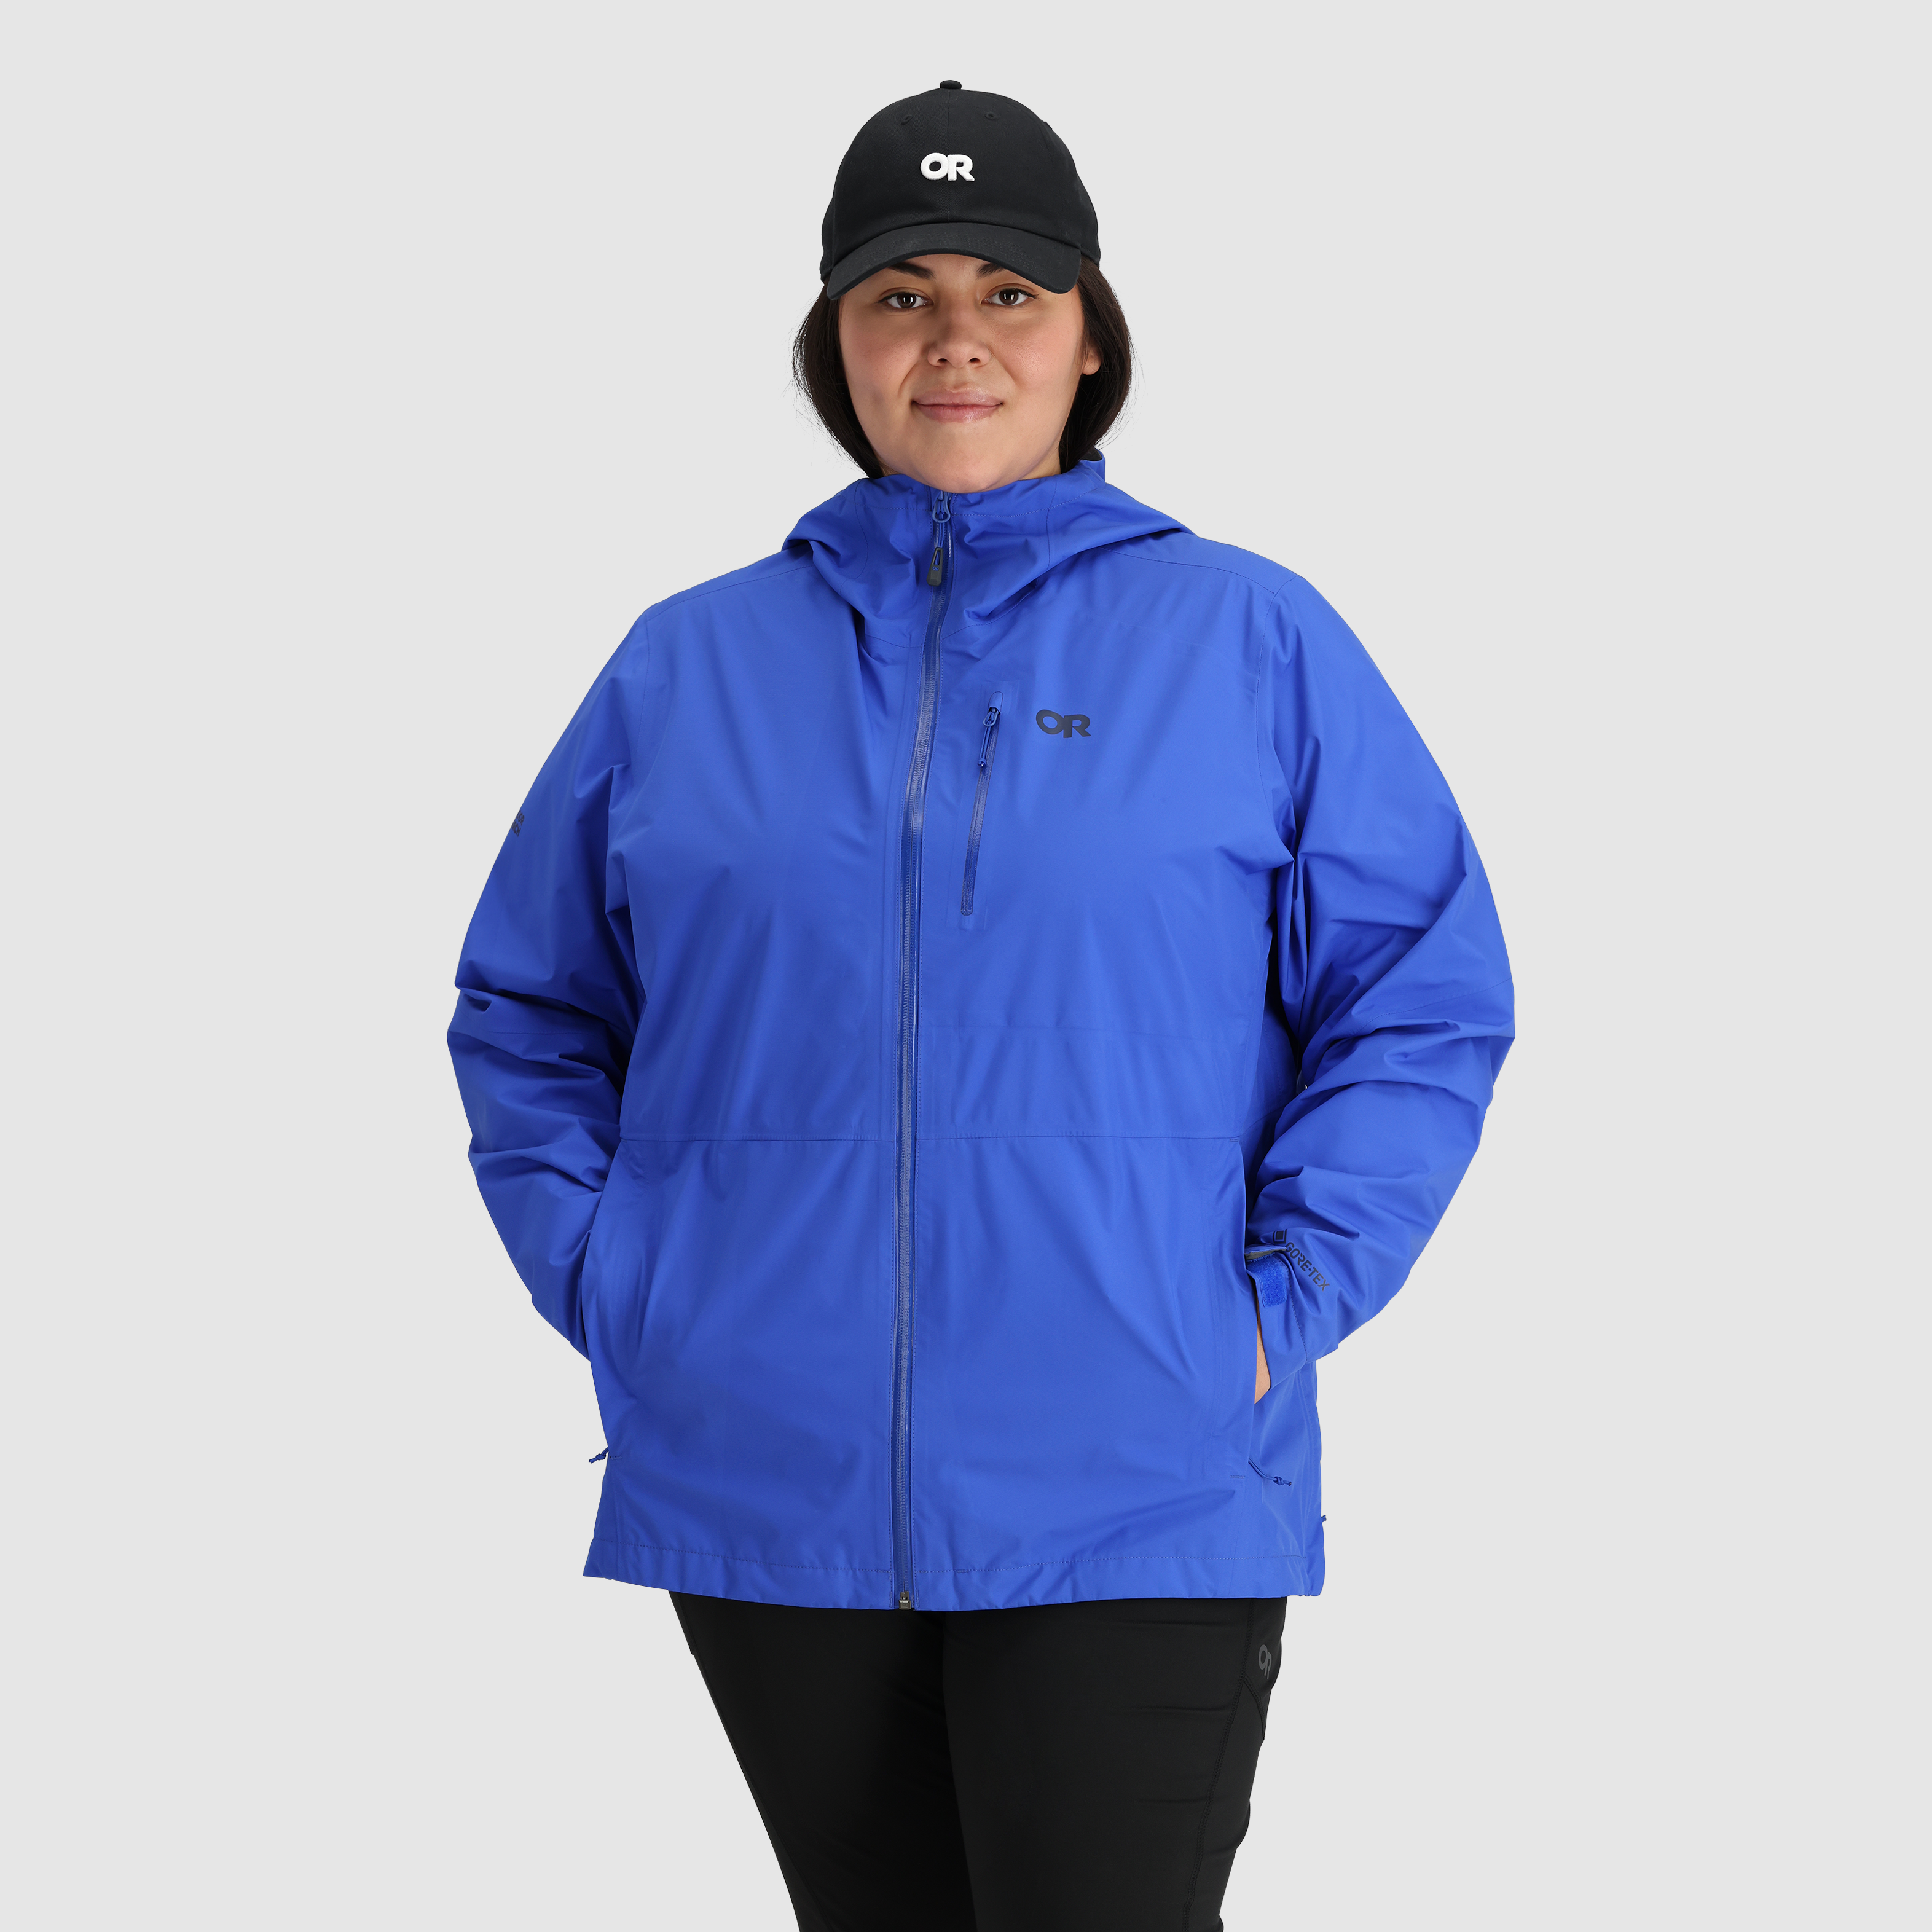 Vapor Stormlight Ultralight Rain Jacket | First Lite